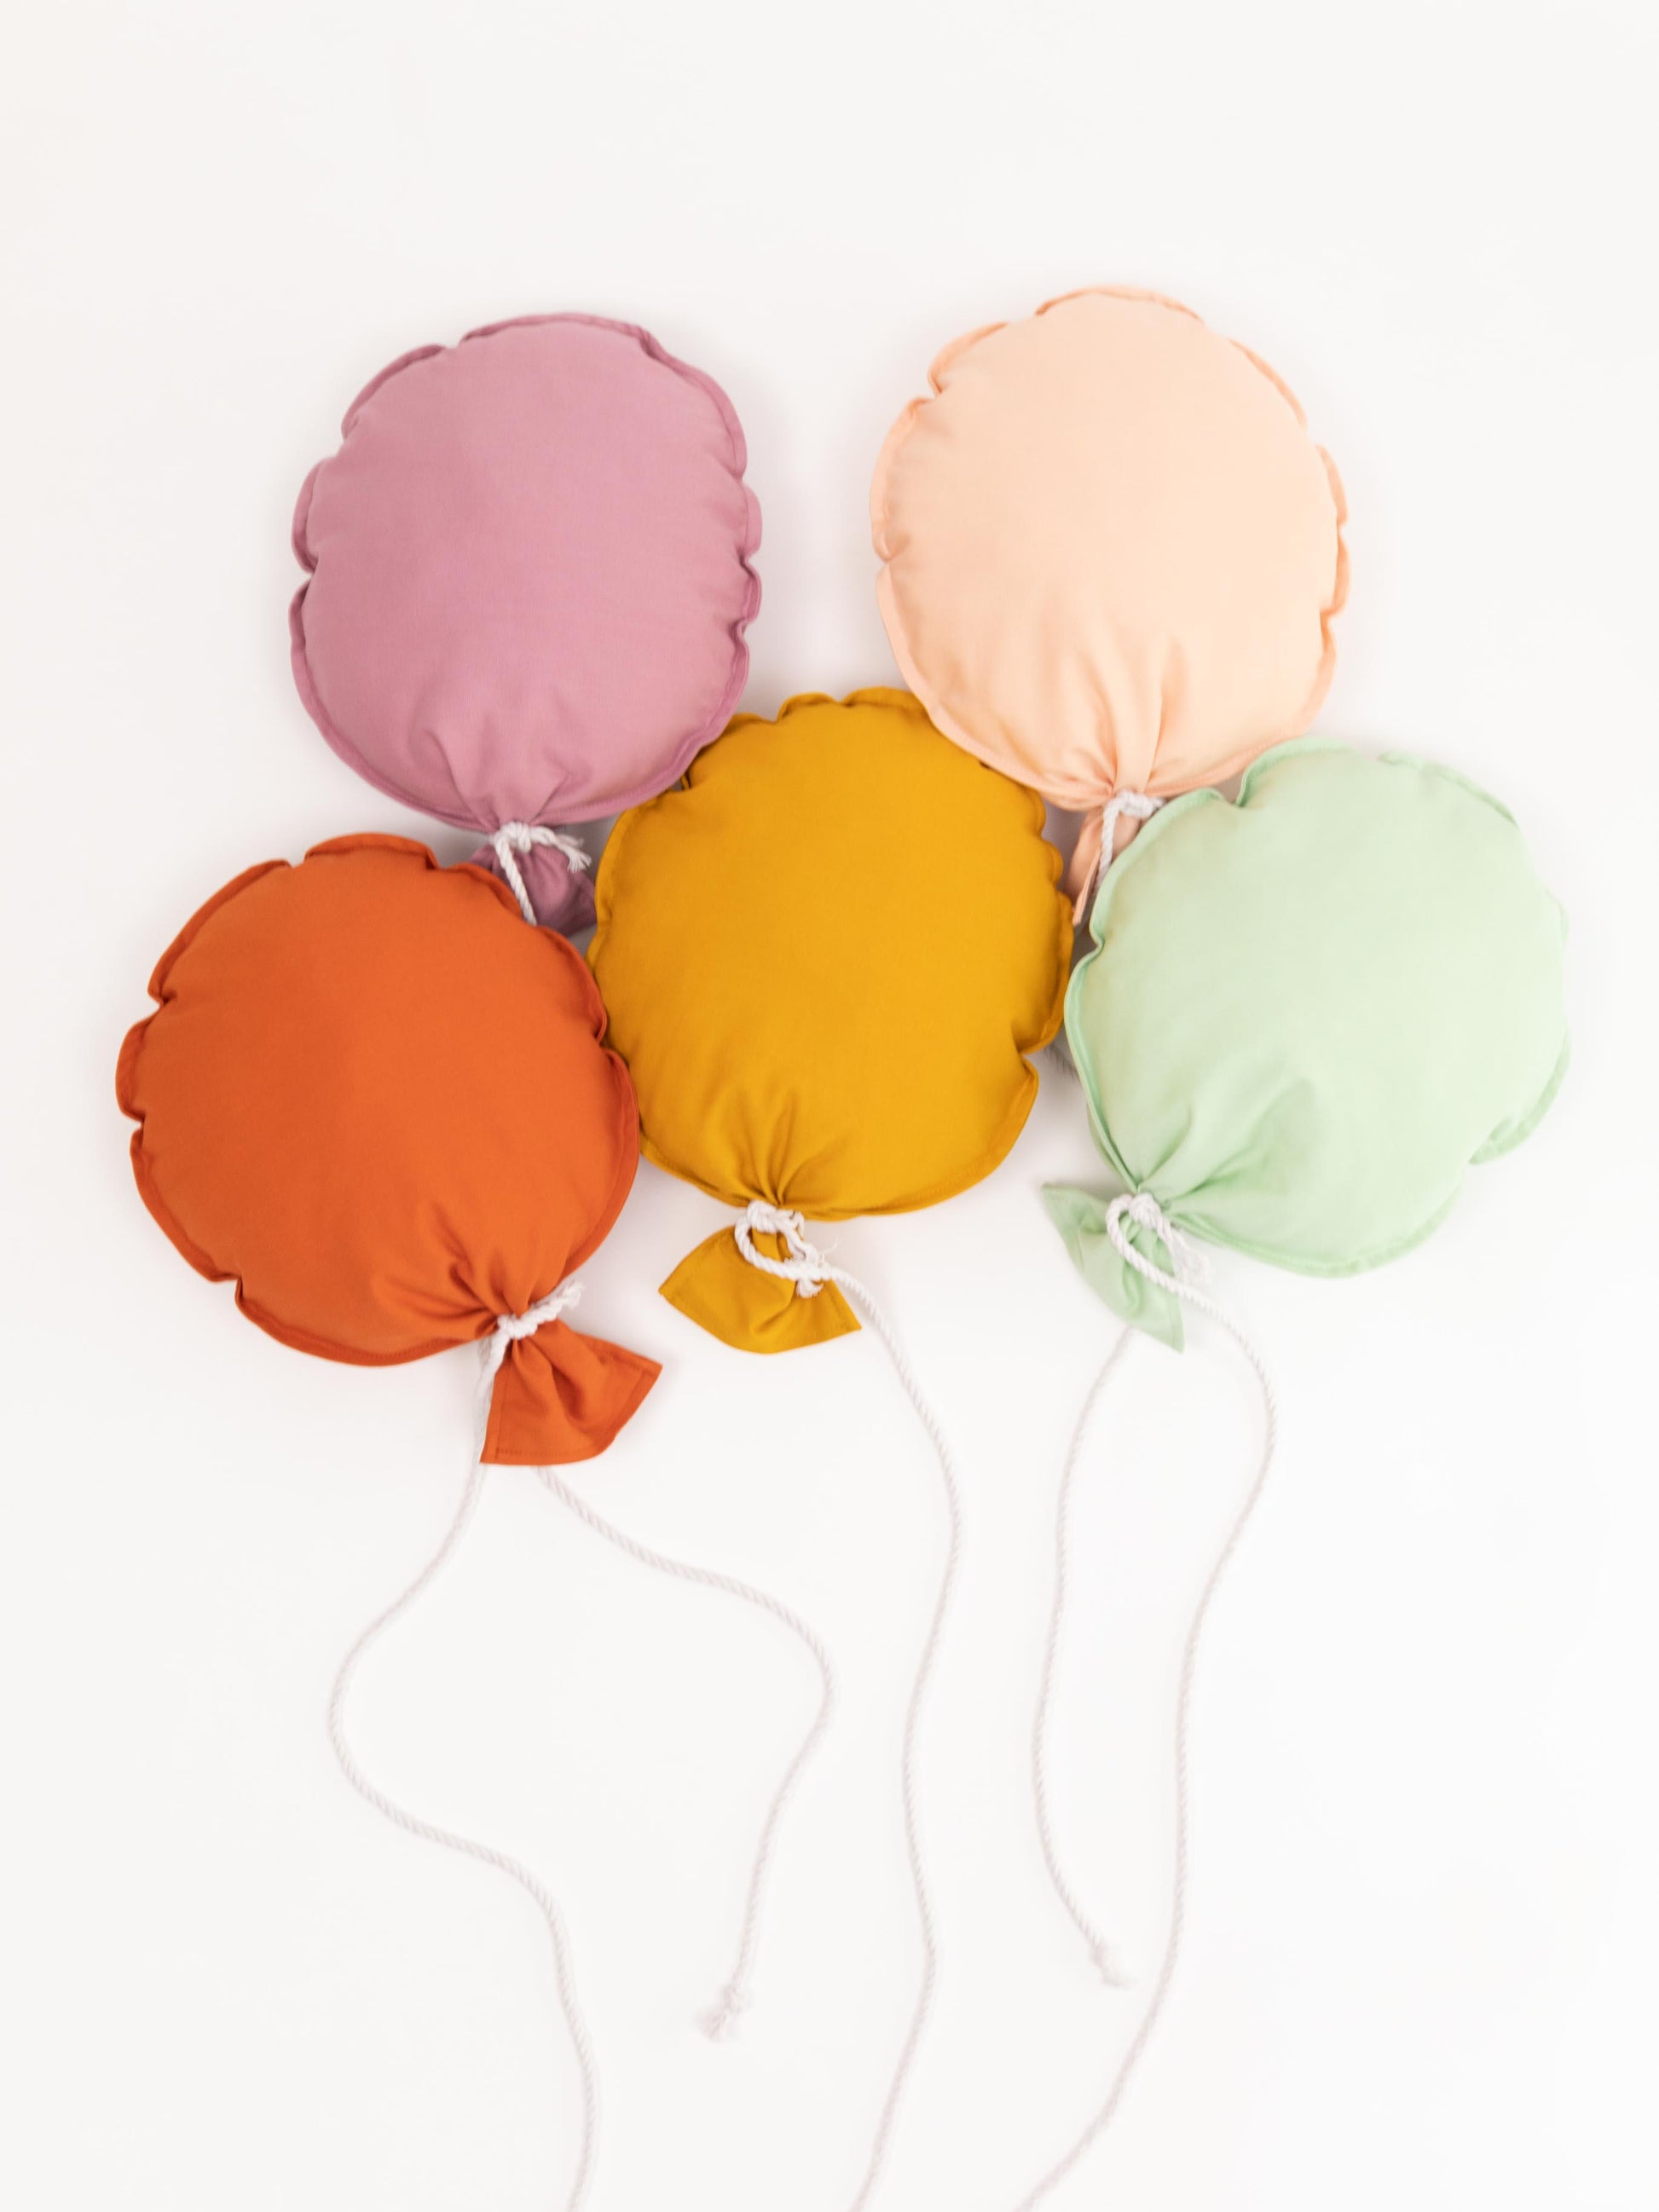 Bunter Stoff-Luftballon für die Kinderzimmerdecke, sorgt für heitere Atmosphäre und liebevolle Dekoration.